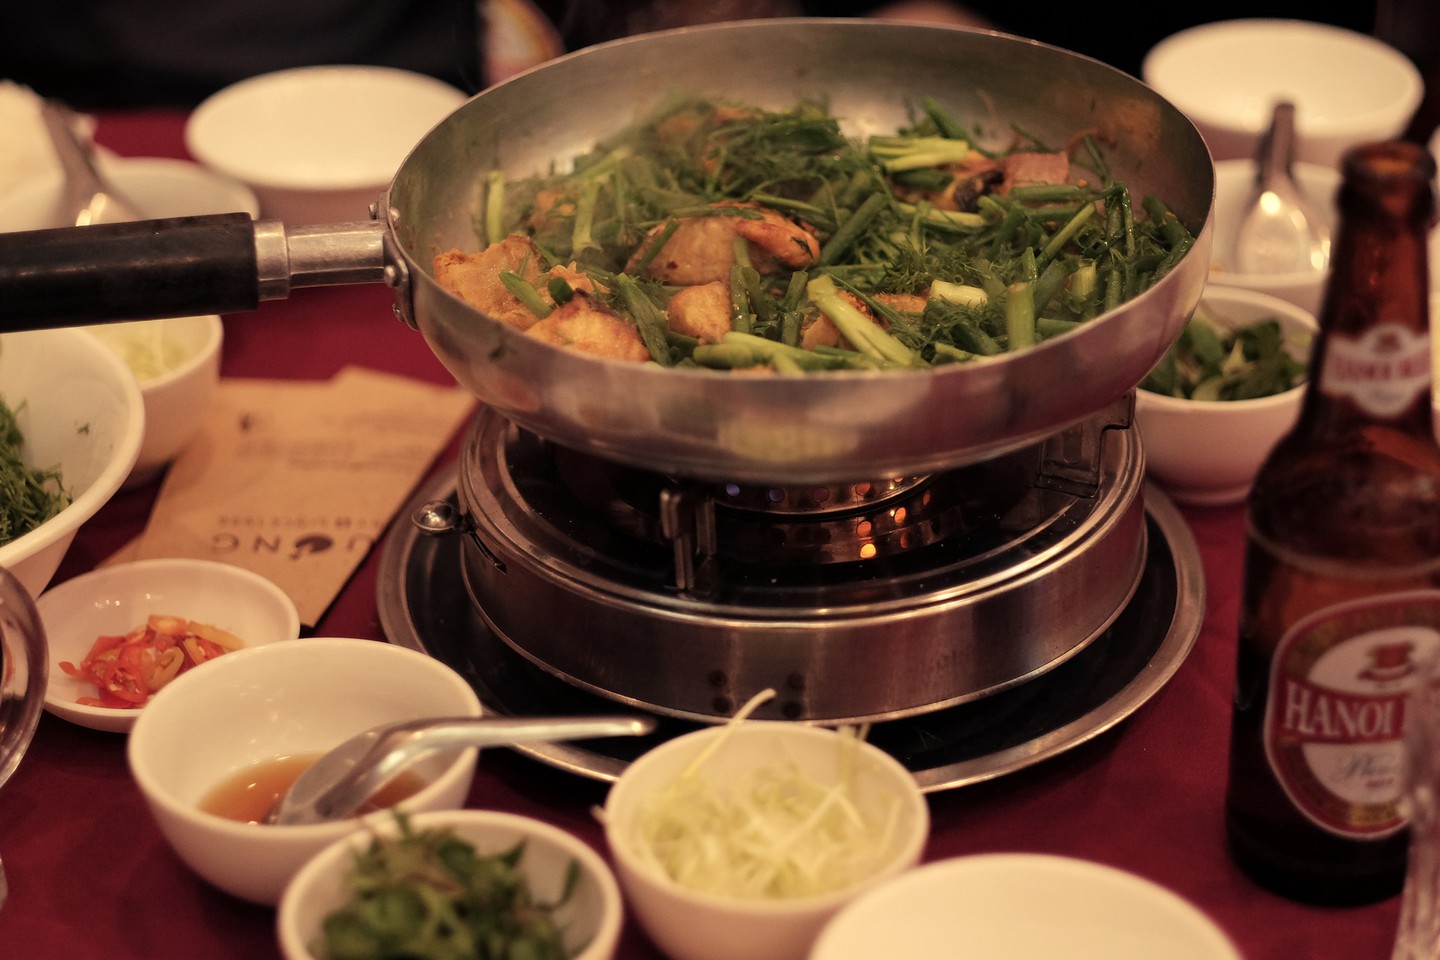 Pan asia хого. Боне вьетнамское блюдо. Вьетнамский обед. Вьетнамская кухня во Вьетнаме. Северная кухня Вьетнама.